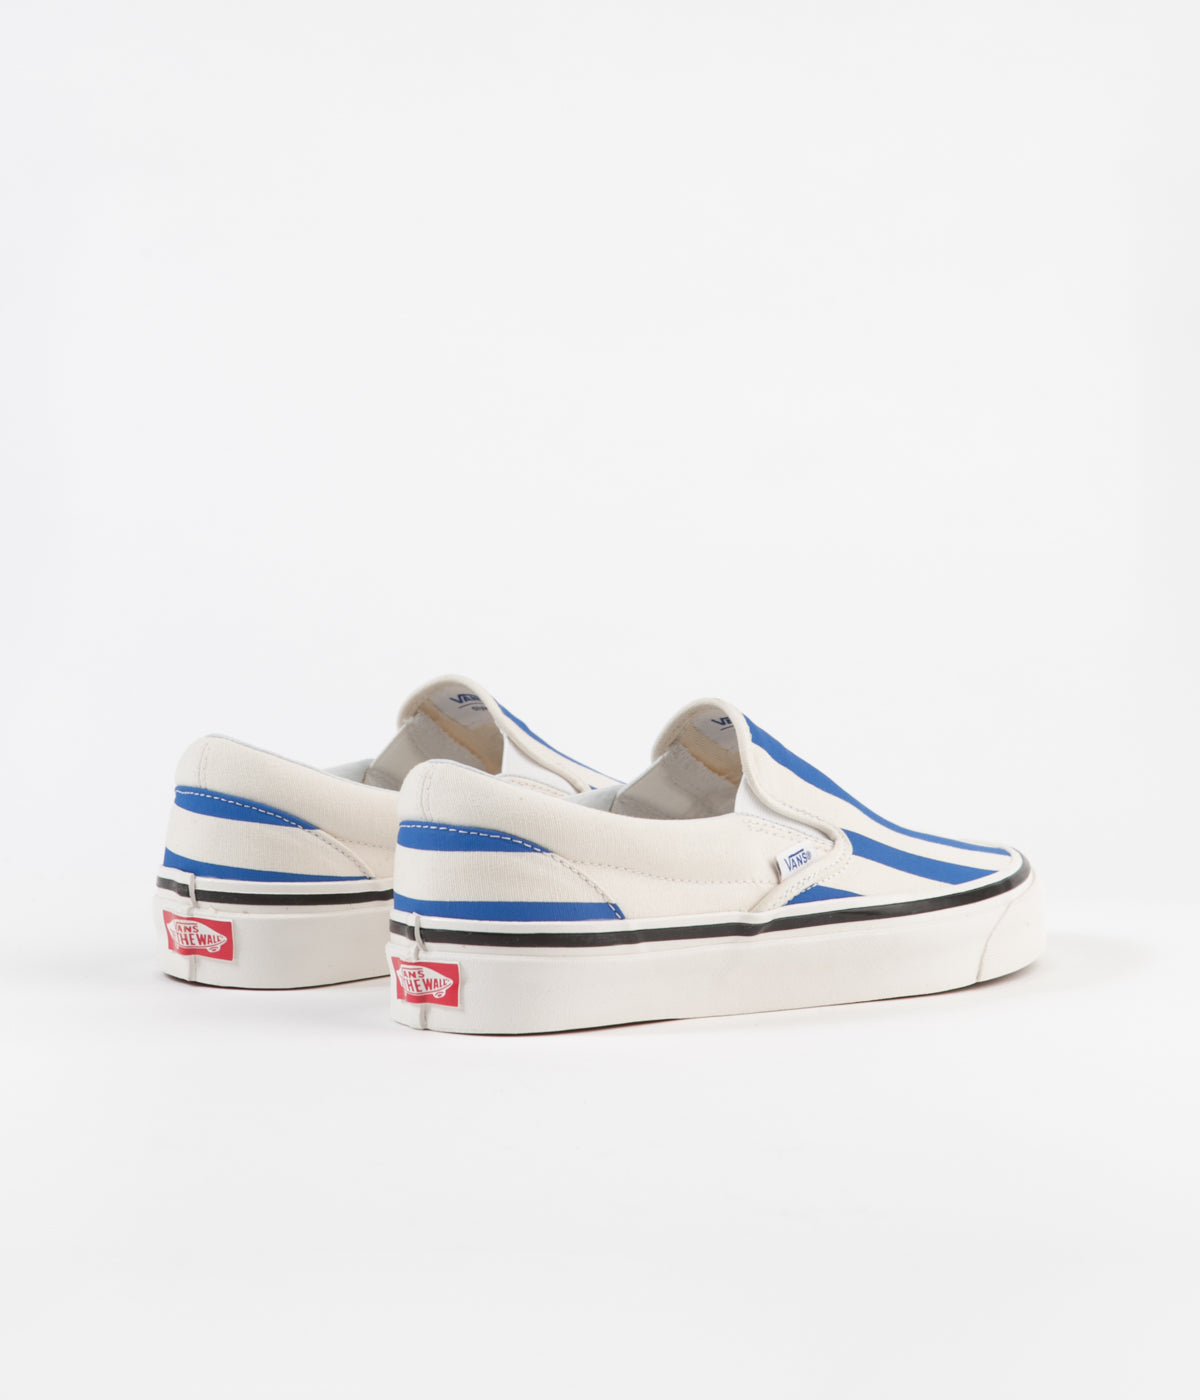 Vans Classic Slip-On 98 DX Anaheim Factory Shoes - OG White / OG Blue ...